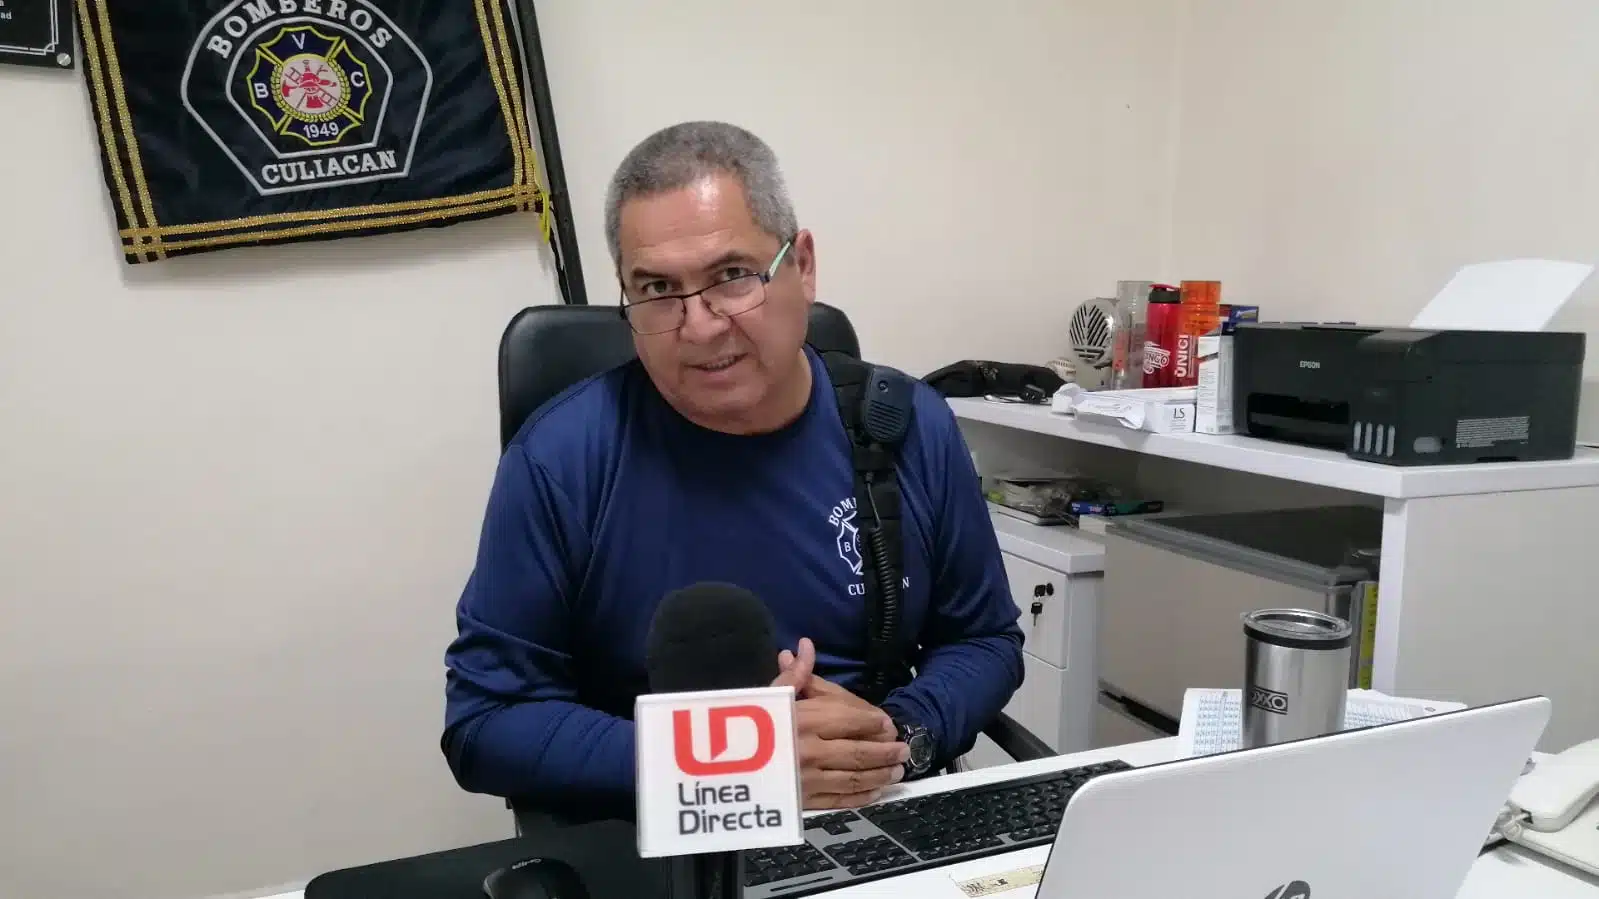 Efraín Araujo Zazueta entrevistado por Línea Directa en su oficina